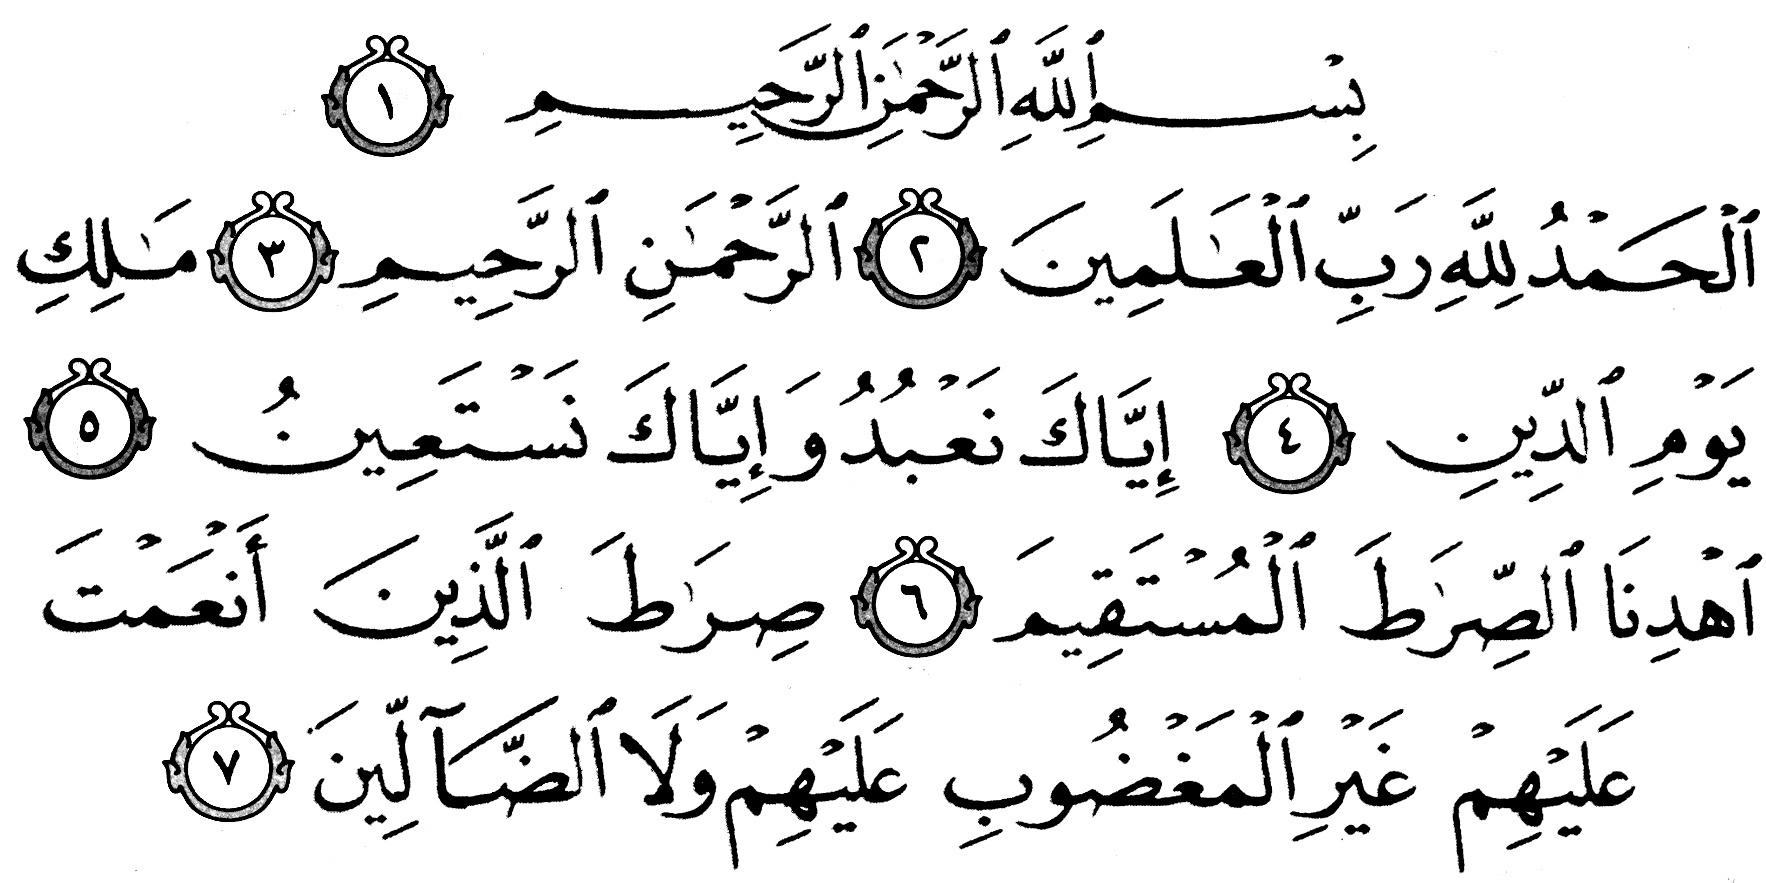 Правильное чтение аль фатихи. Сура Аль Фатиха на арабском. Коран Сура Аль Фатиха на арабском. Сура Аль Фатиха на арабском языке. Сура 1 Аль-Фатиха открывающая.